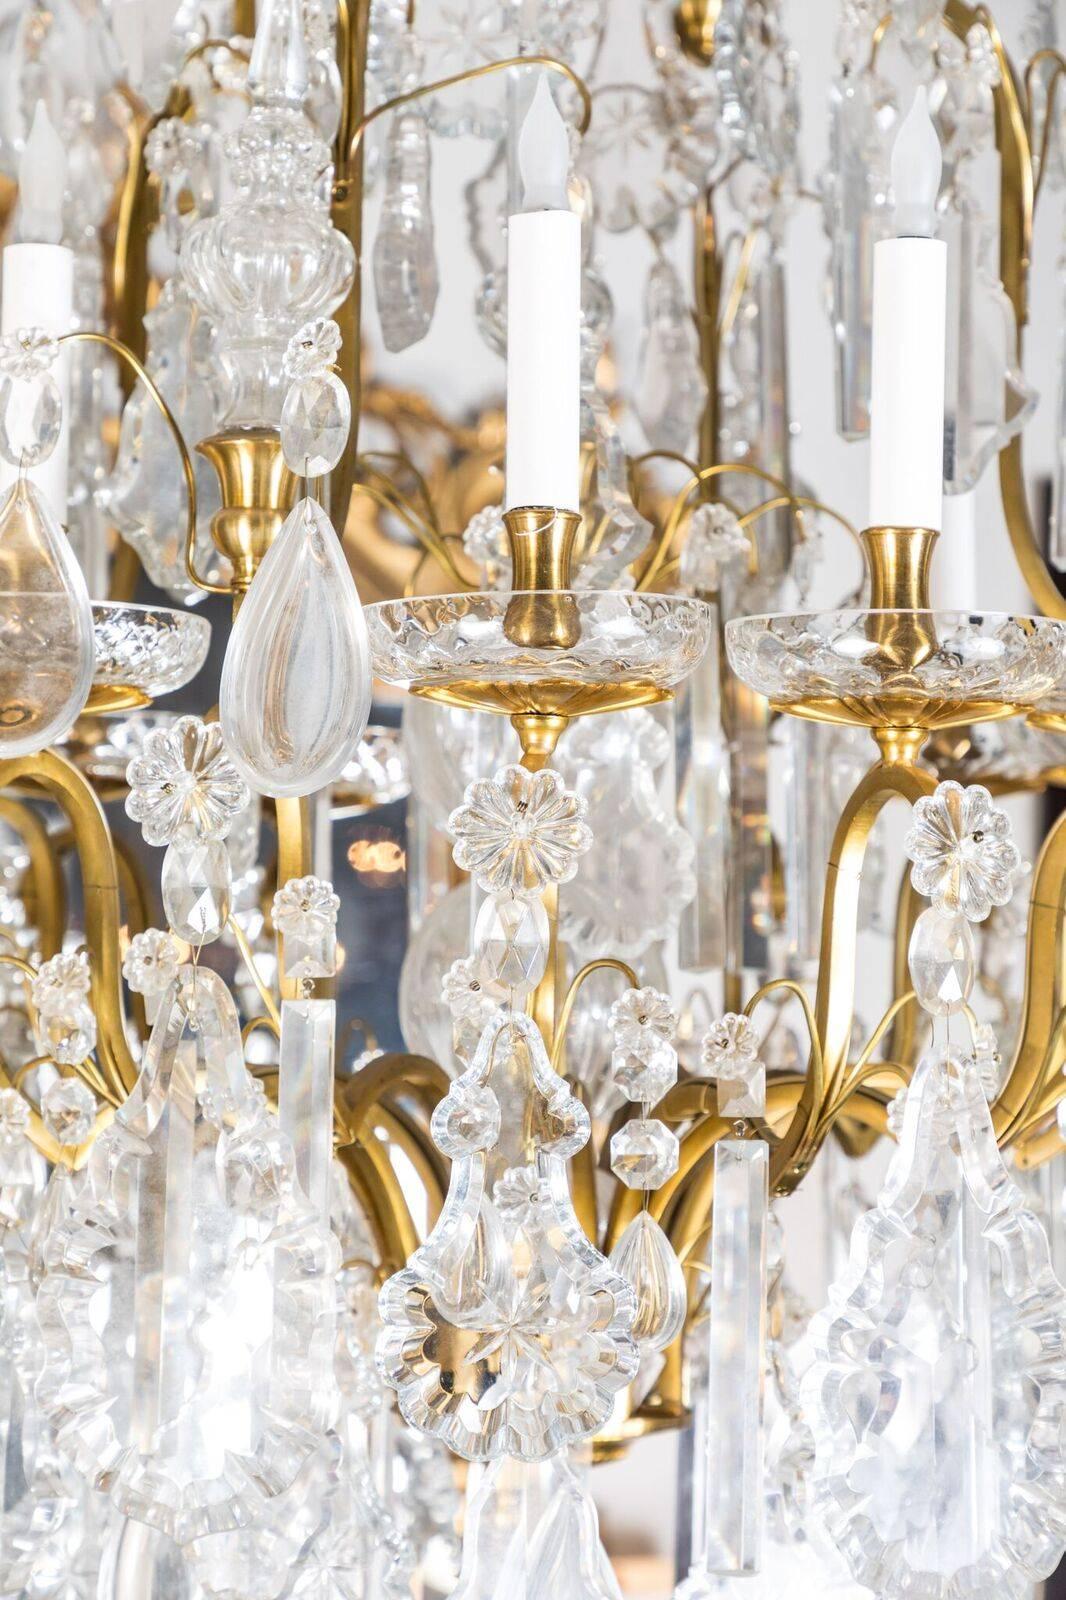 Reich verzierter, großer, vergoldeter Bronze- und Kristallkronleuchter im Louis-XIV-Stil mit zwölf Lichtern und einem großen, zentralen Turm. Das Ganze wird von einem beeindruckenden, kristallbesetzten, ballonförmigen Baldachin gekrönt.